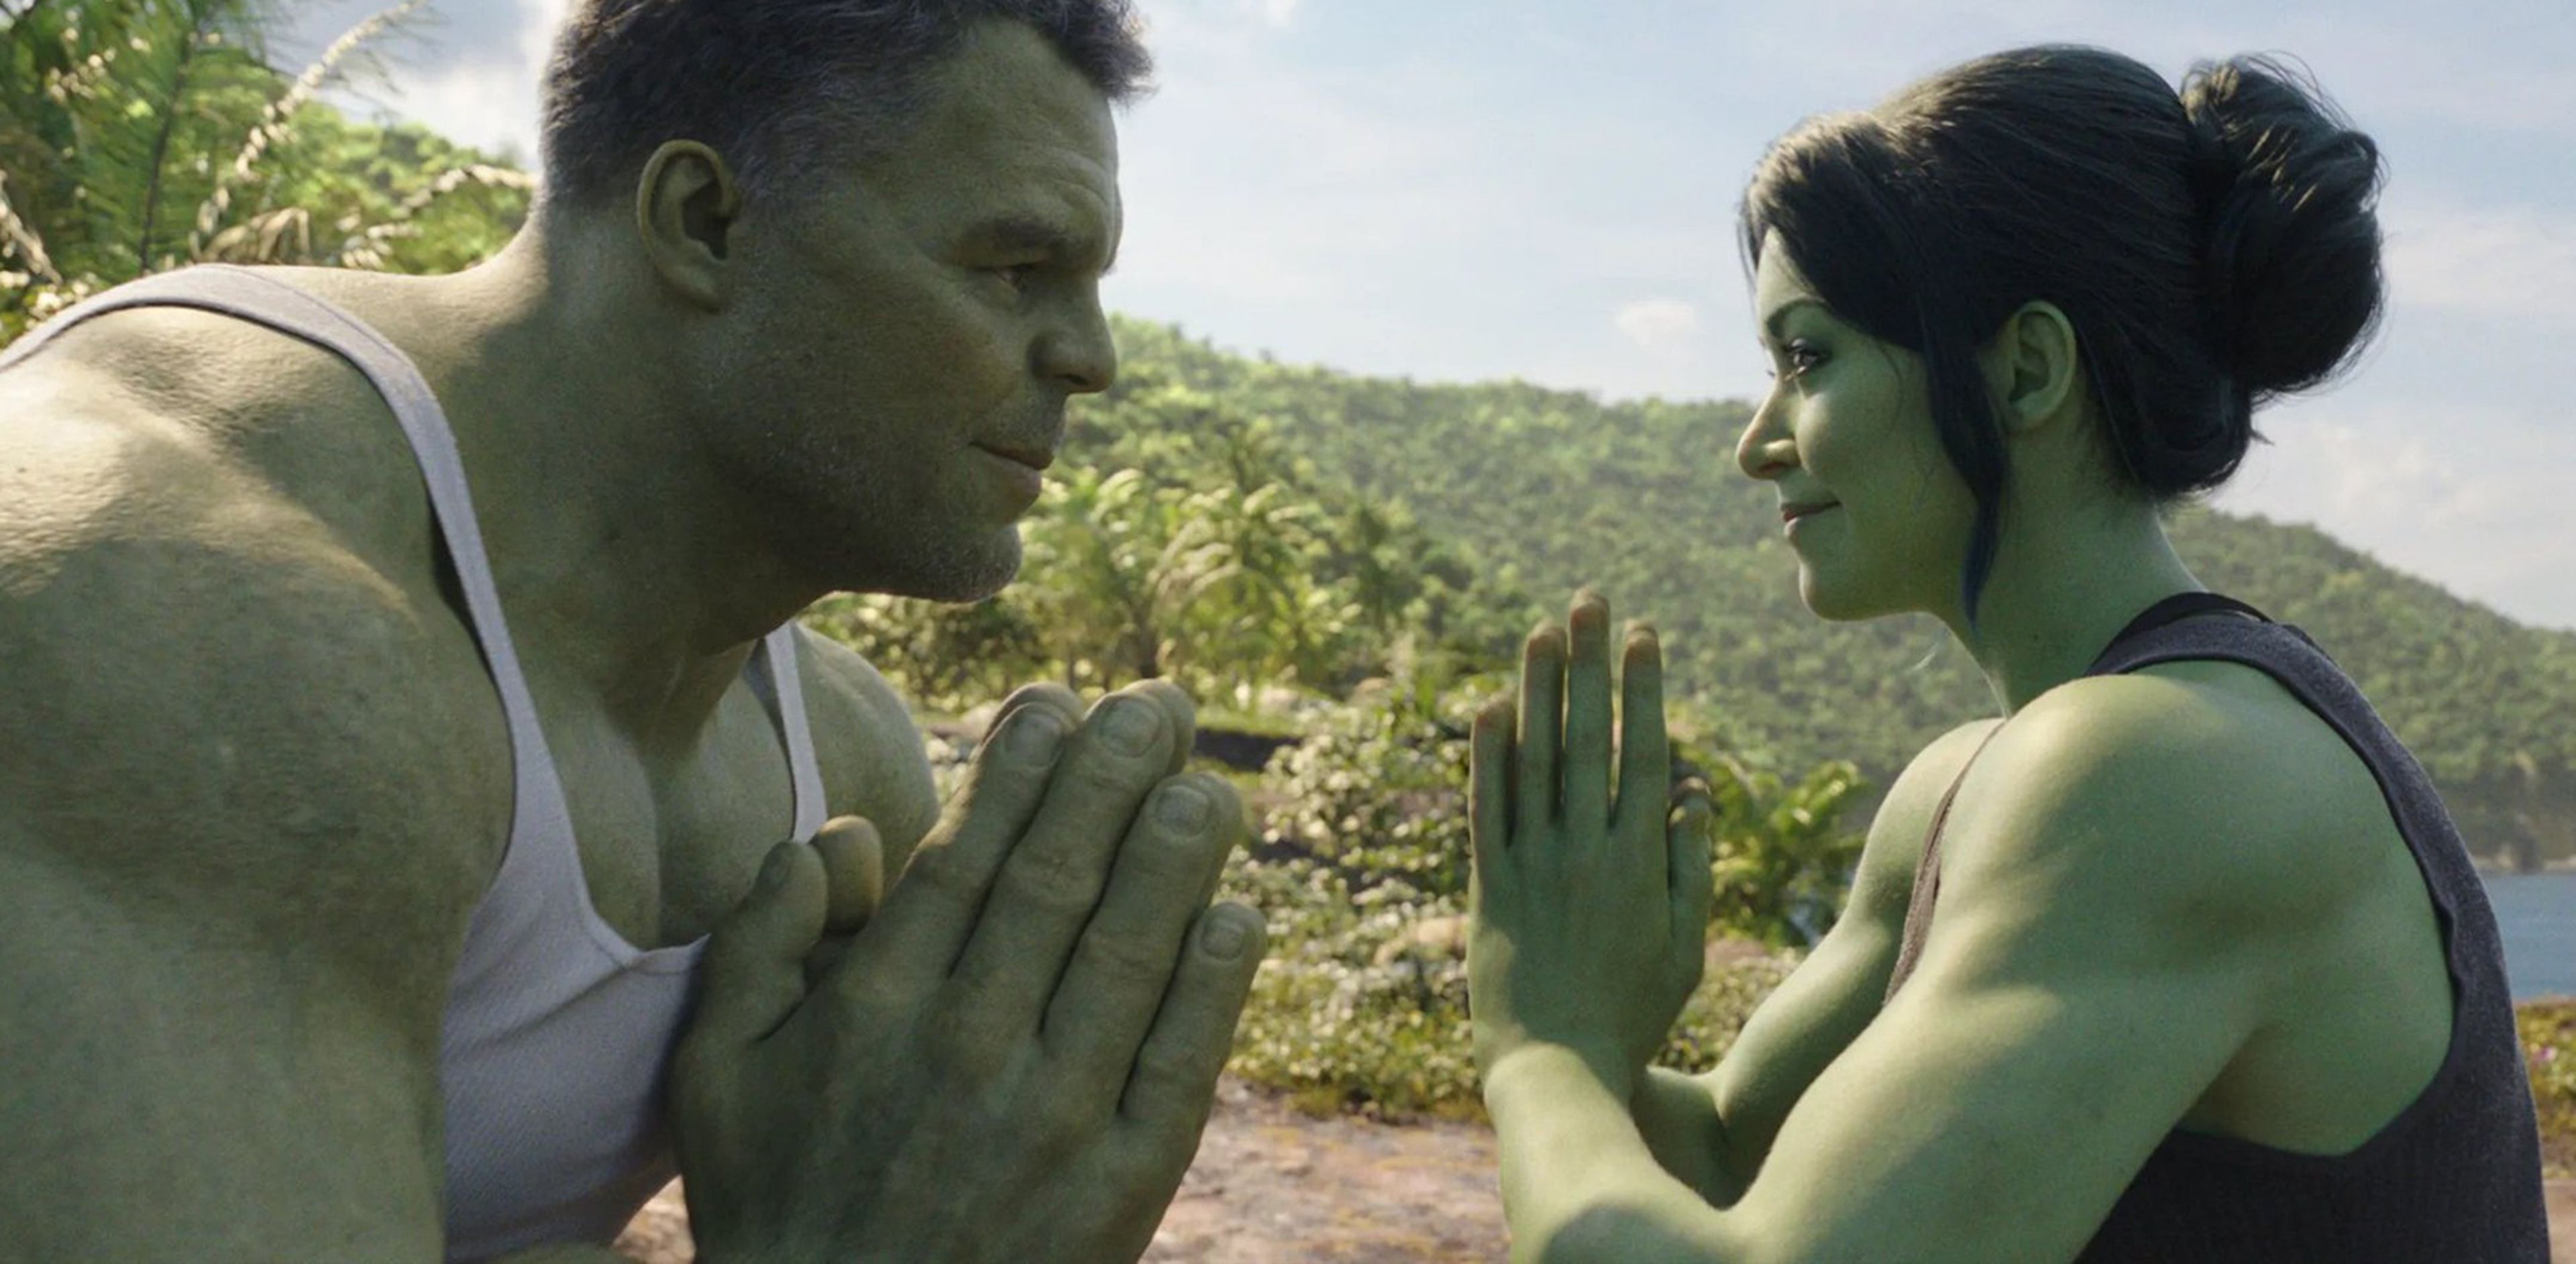 She-Hulk abogada Hulka